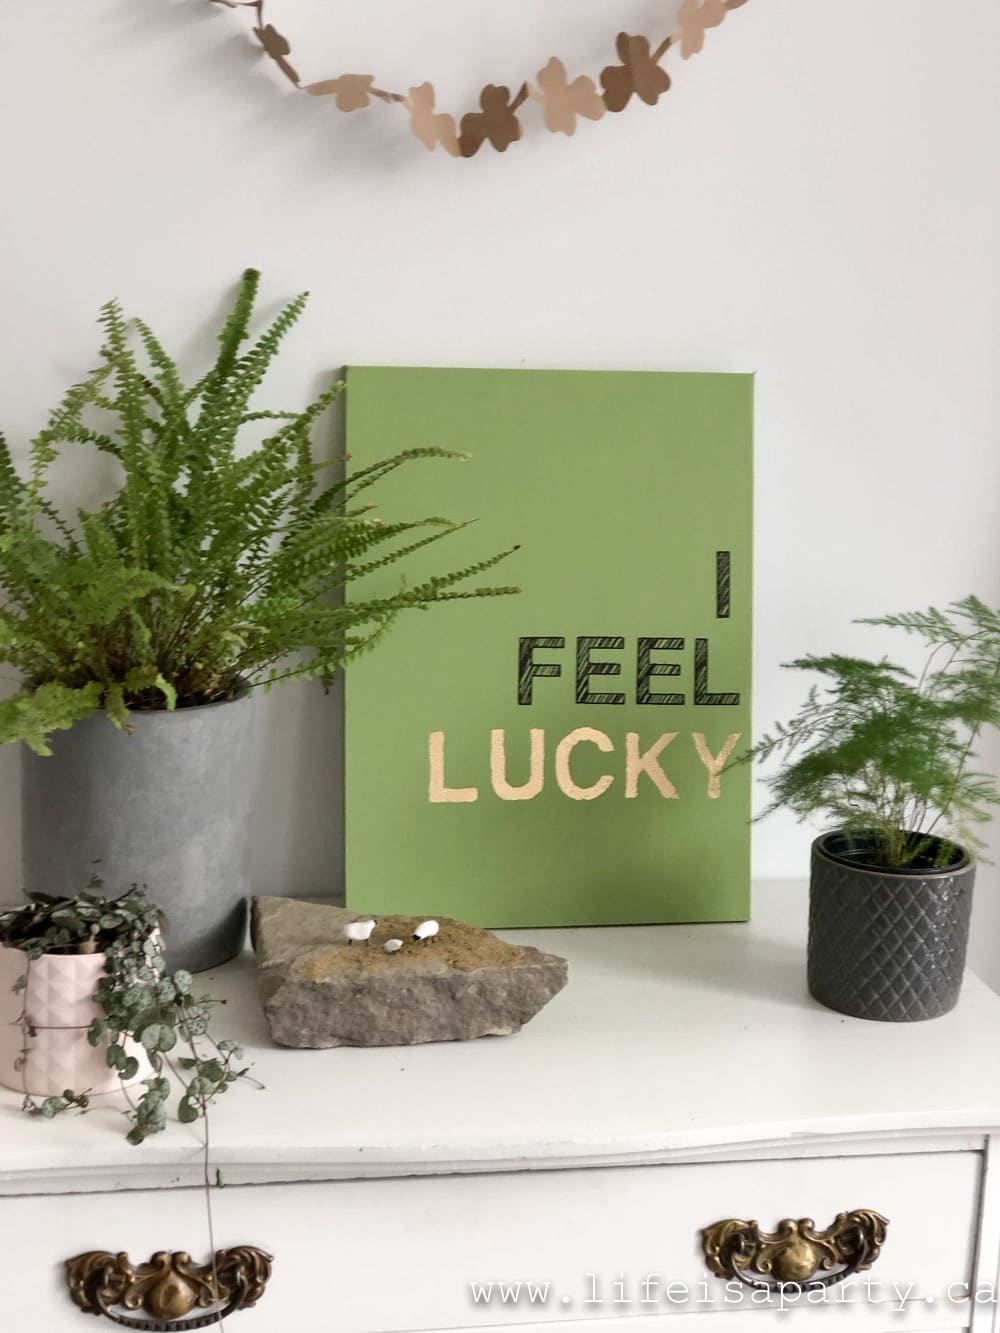 "I Feel Lucky" DIY St. Patrick's Day art